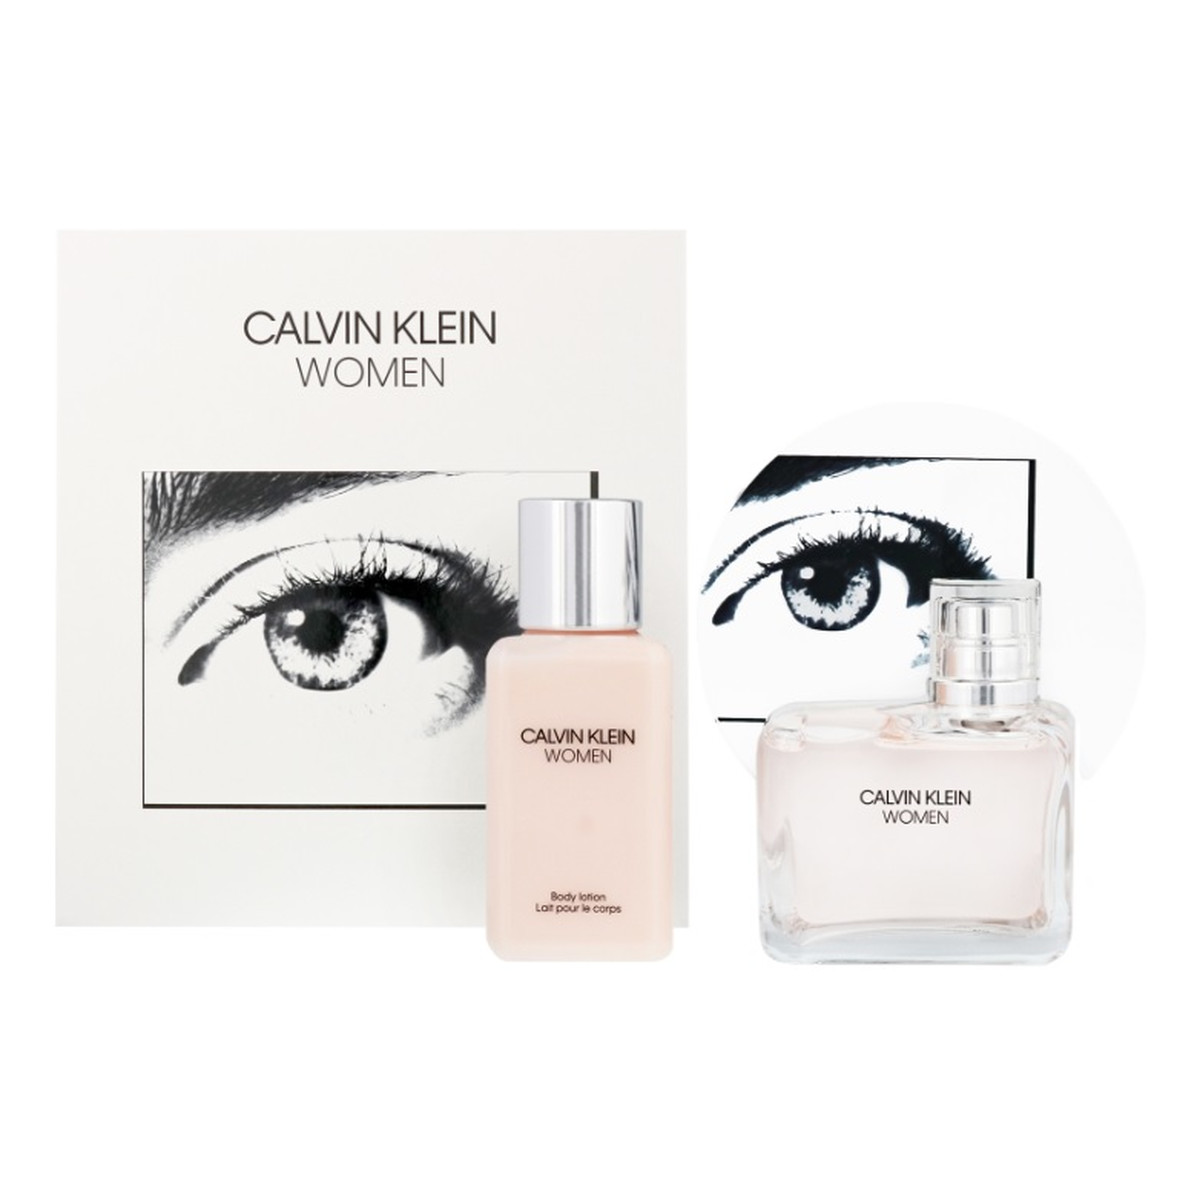 Calvin Klein Women Zestaw woda perfumowana spray 100ml + balsam do ciała 100ml